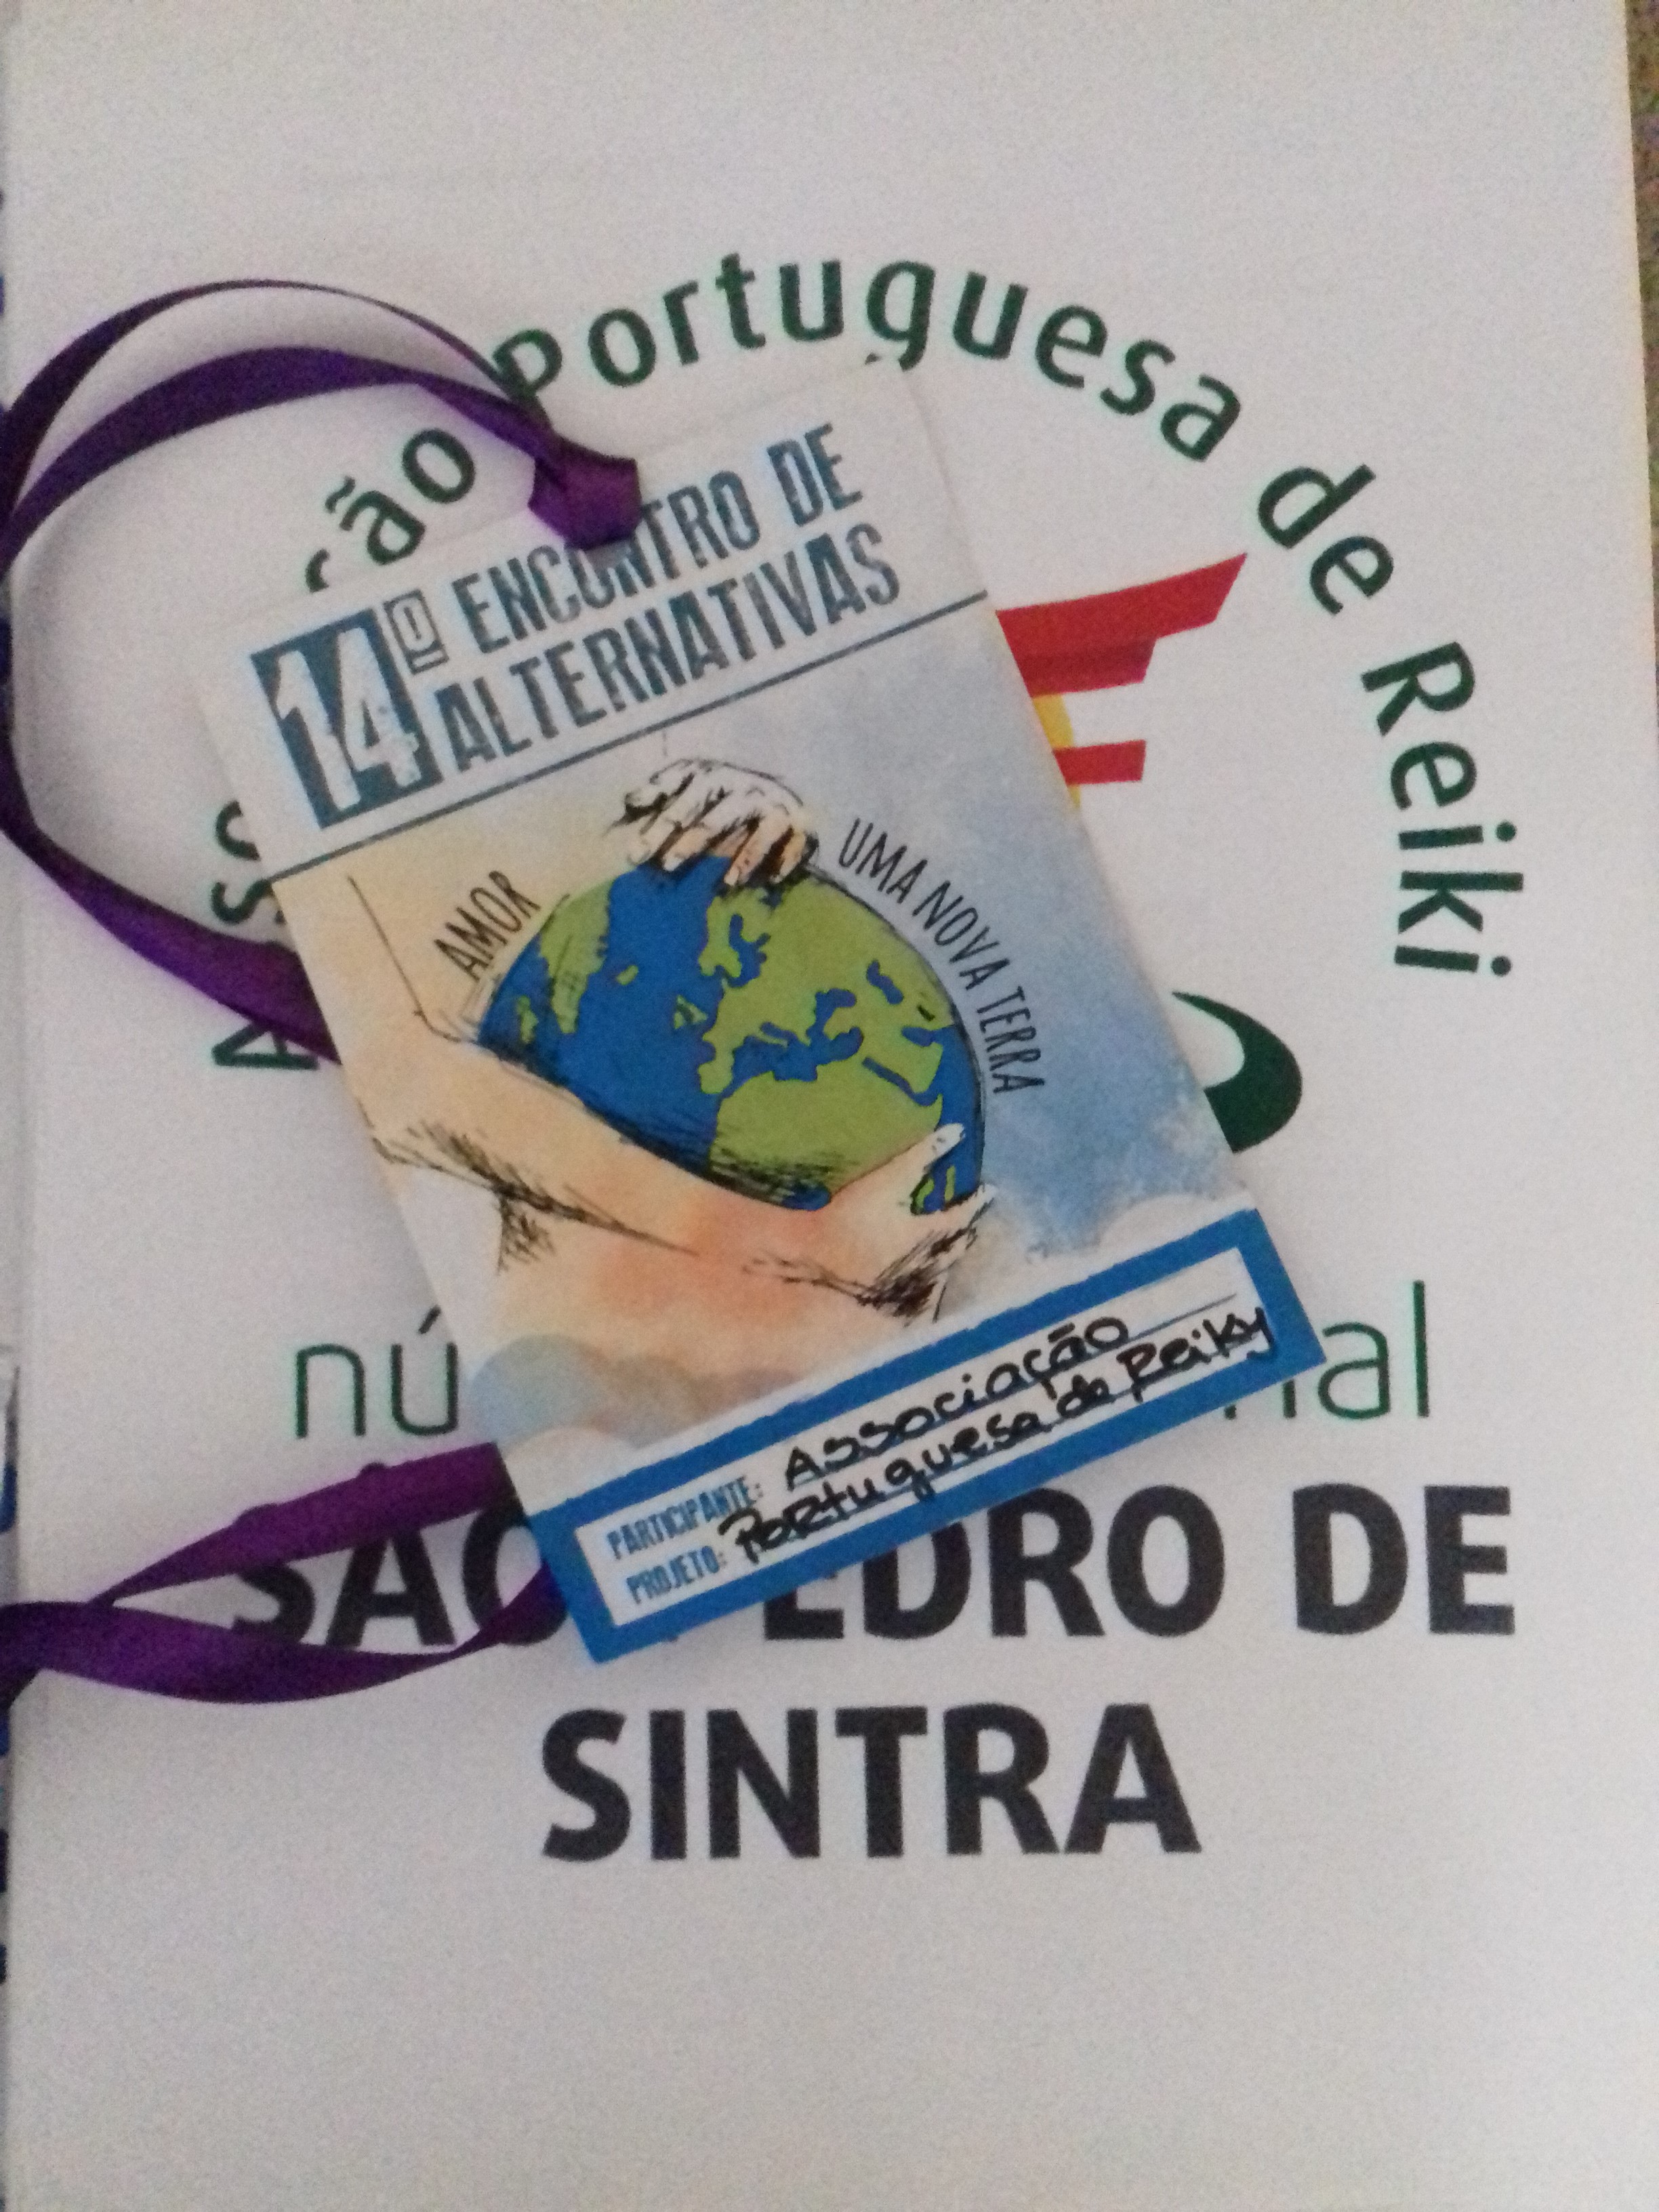 14º Encontro de Alternativas em Sintra